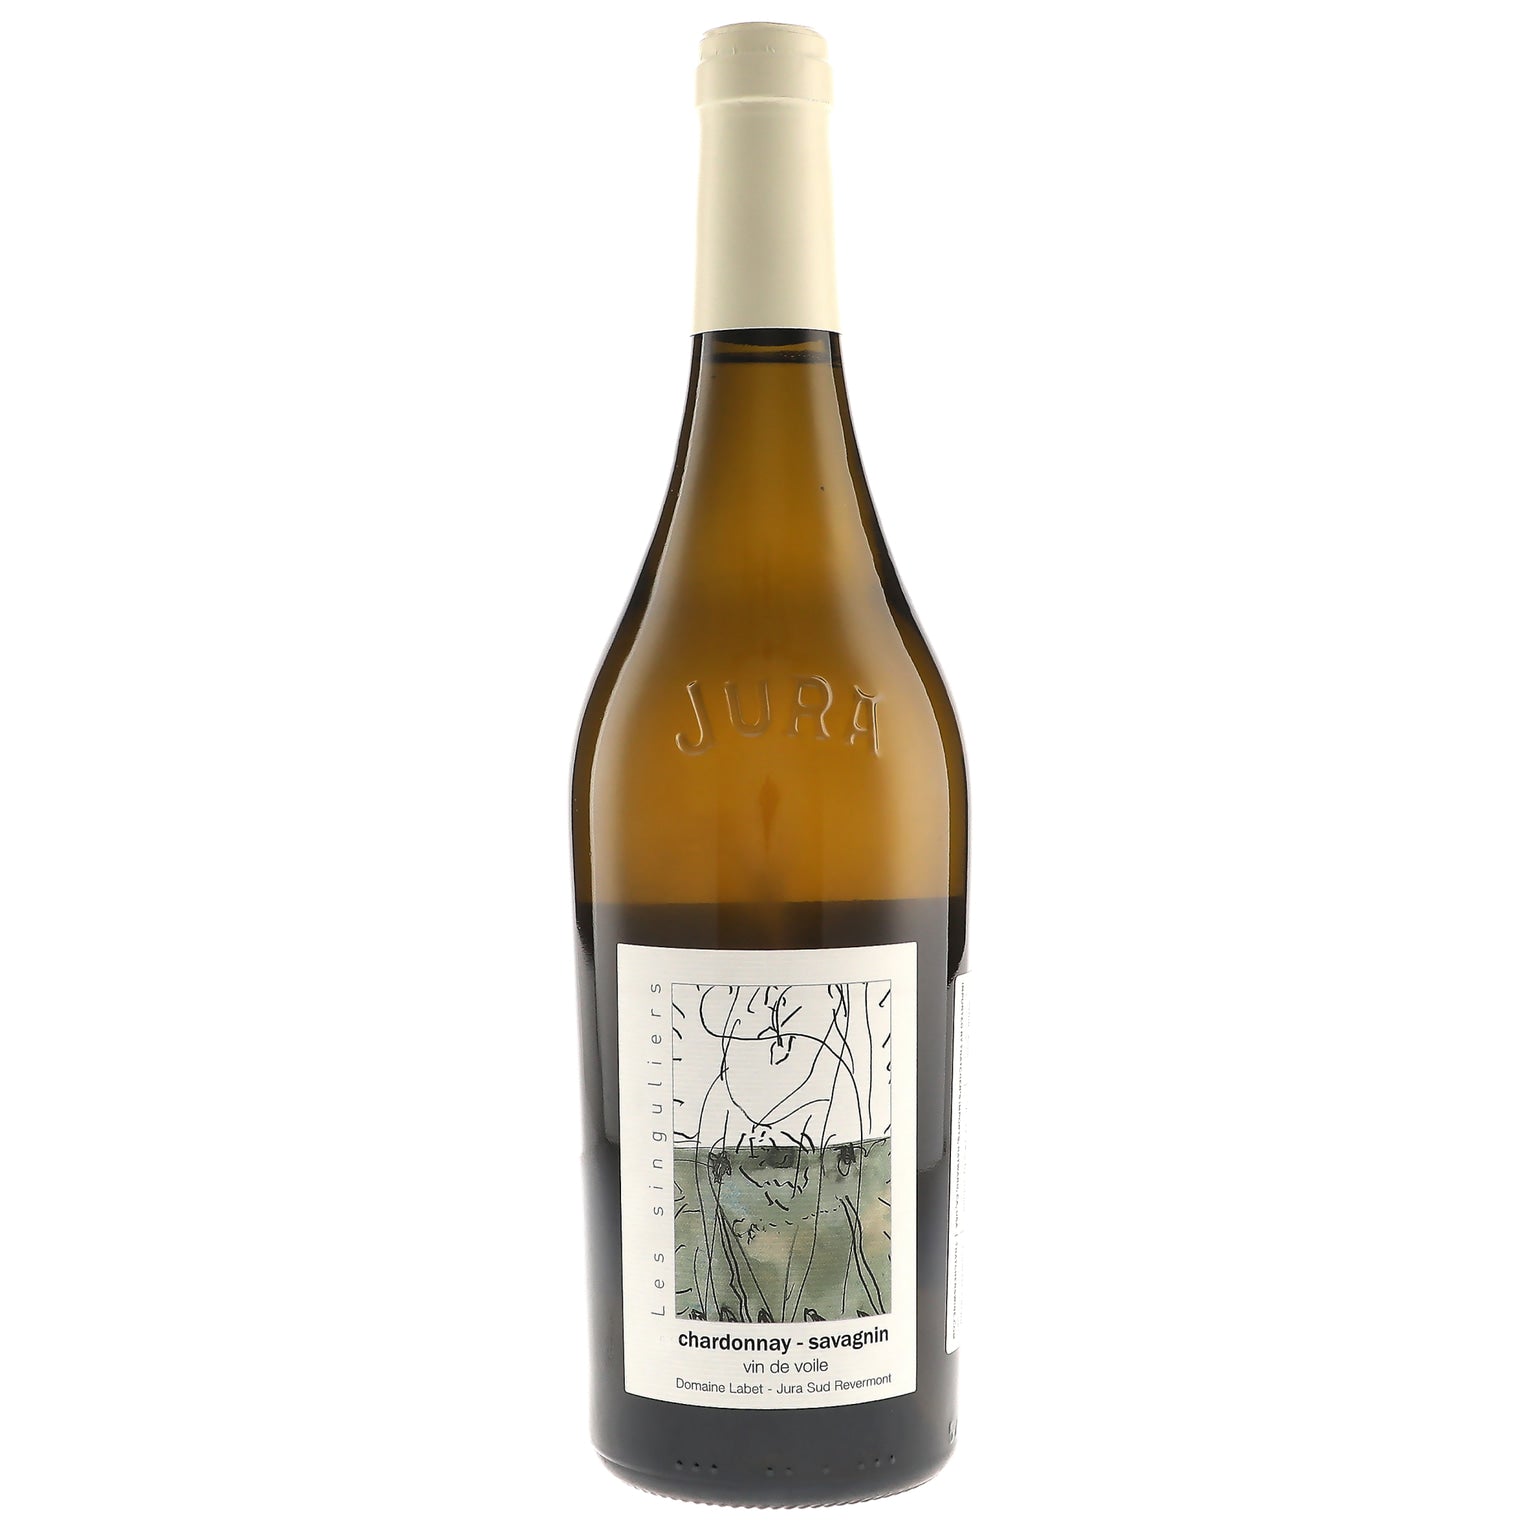 2019 Domaine Labet, Cotes du Jura, Les Singuliers Vin de Voile Chardonnay Savagnin